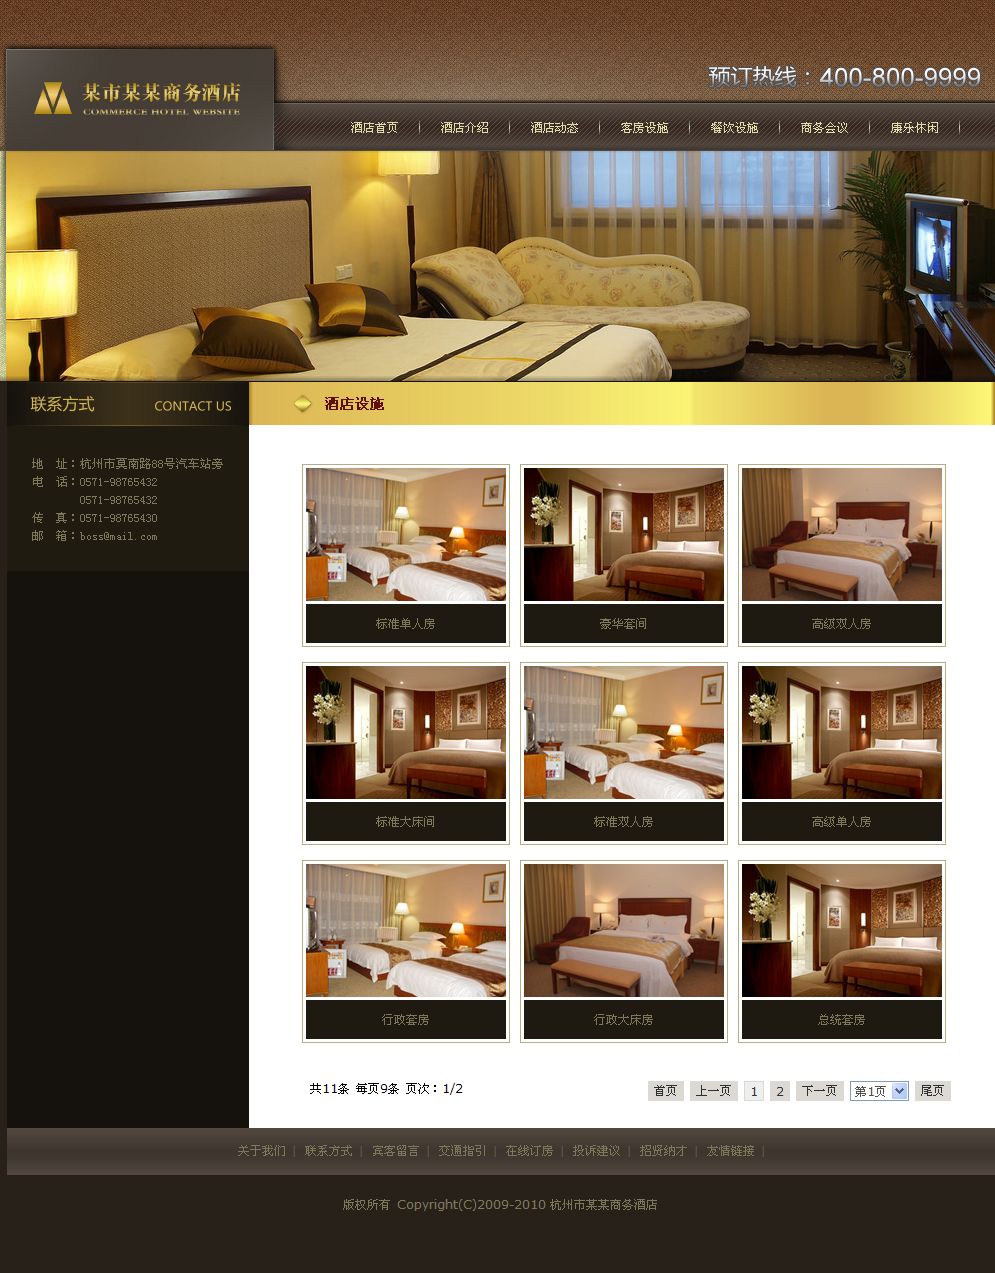 商务宾馆酒店网站产品列表页